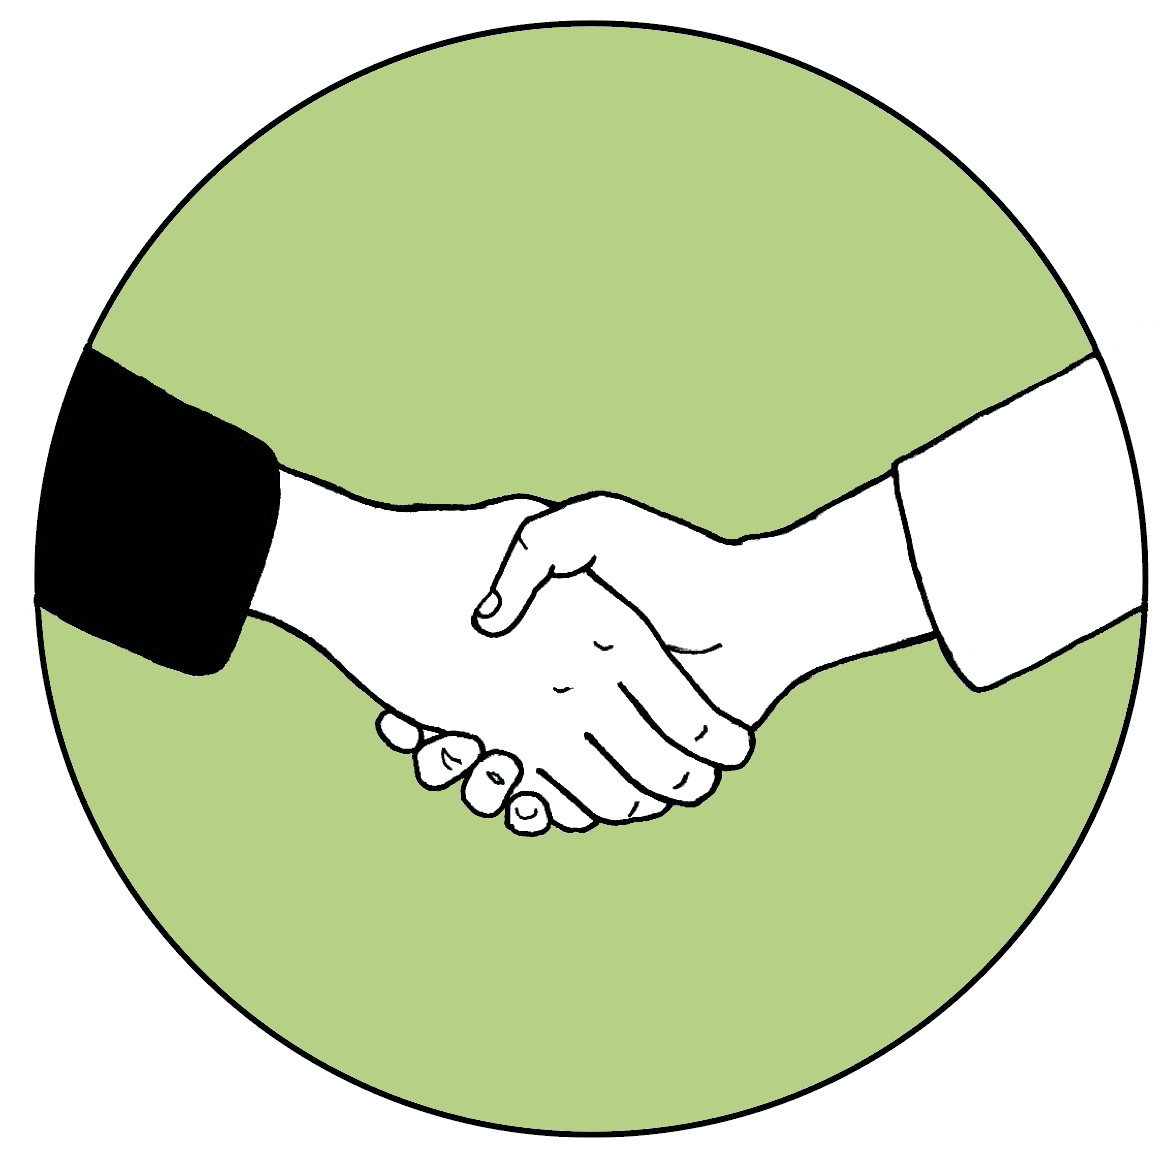 Tecknad bild av ett handslag. Bakgrunden är en grön cirkelformad bottenplatta. Illustration Majsan Sundell.